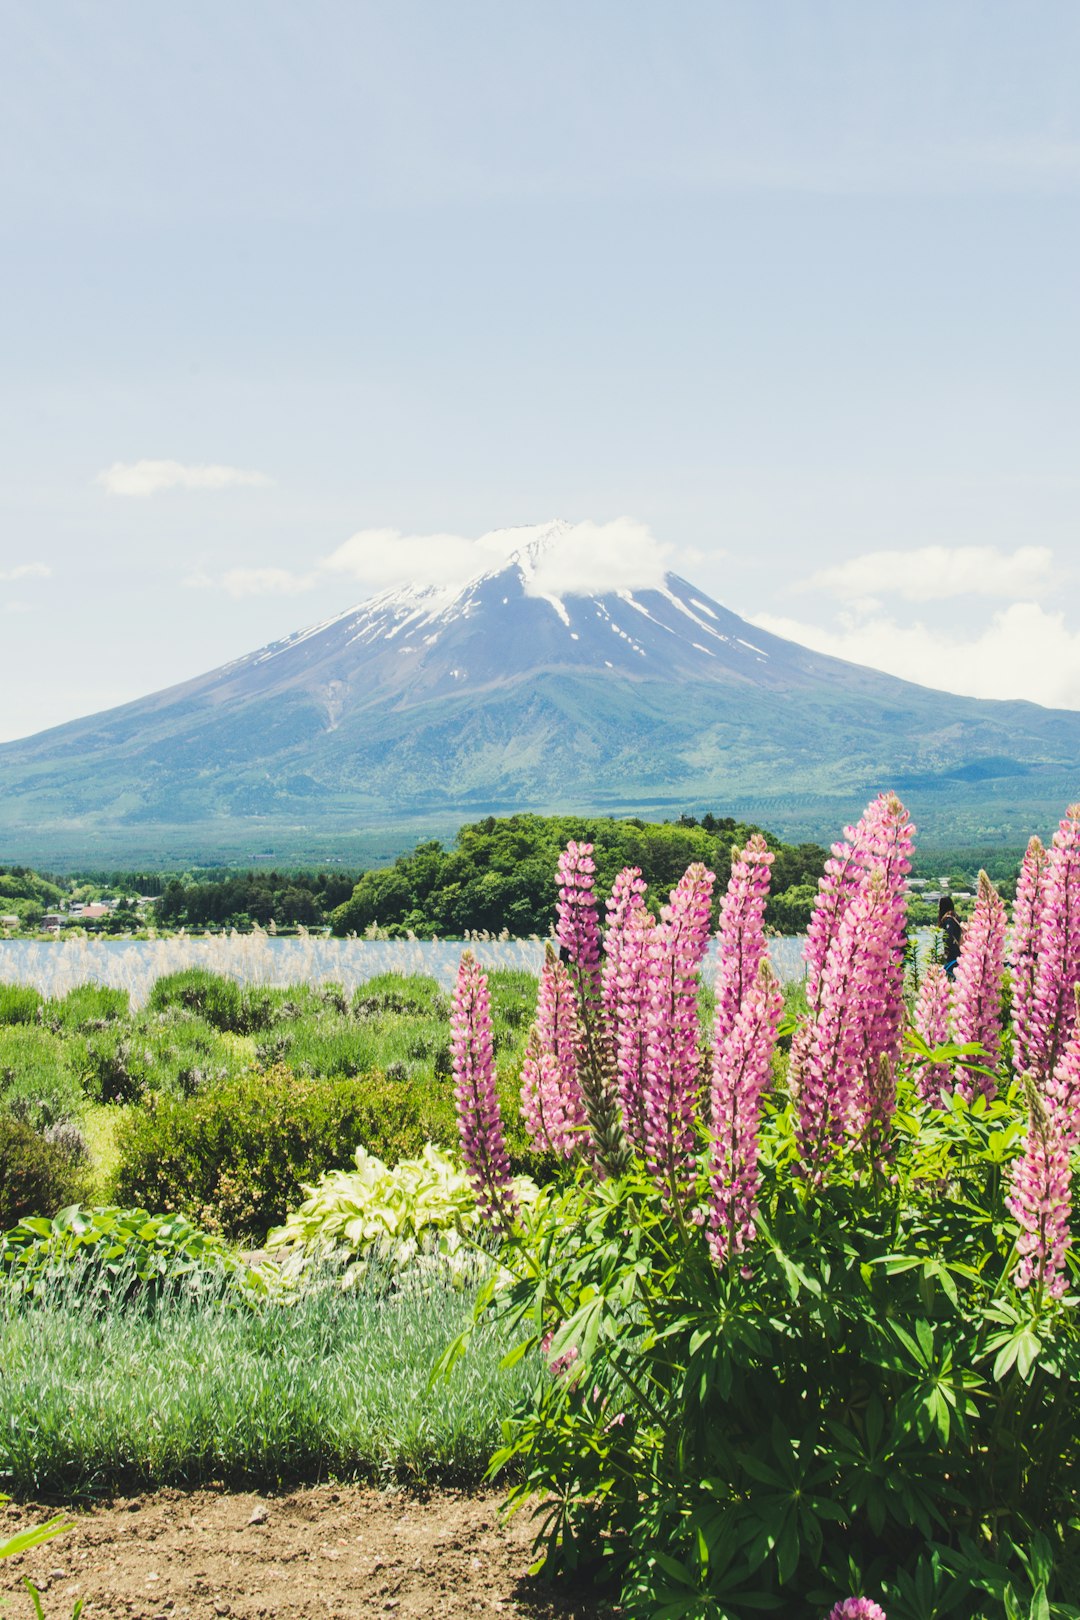 Travel Tips and Stories of Lake Kawaguchi in Japan